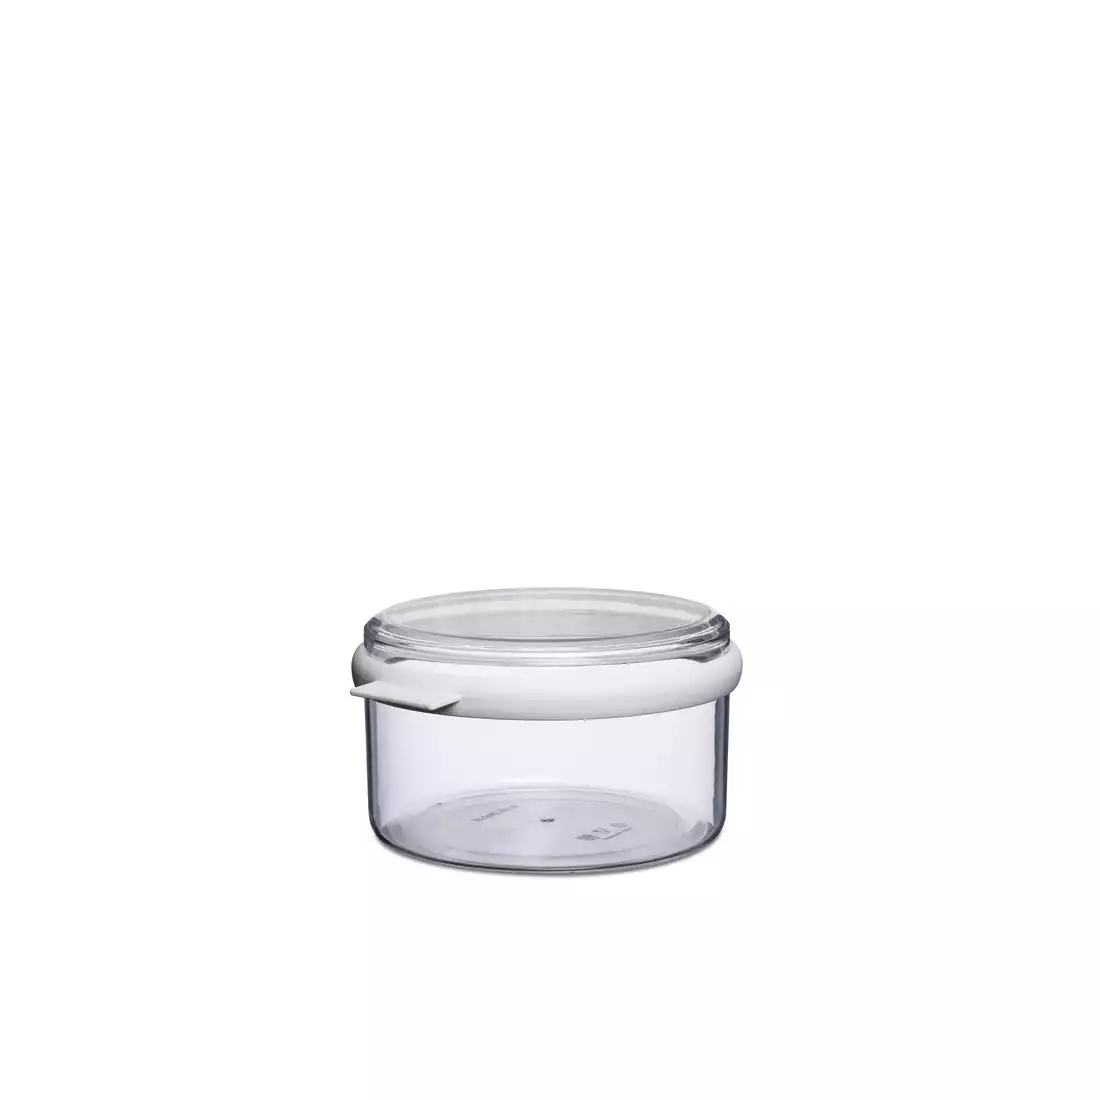 MEPAL STORA round food container 1500 ml, white